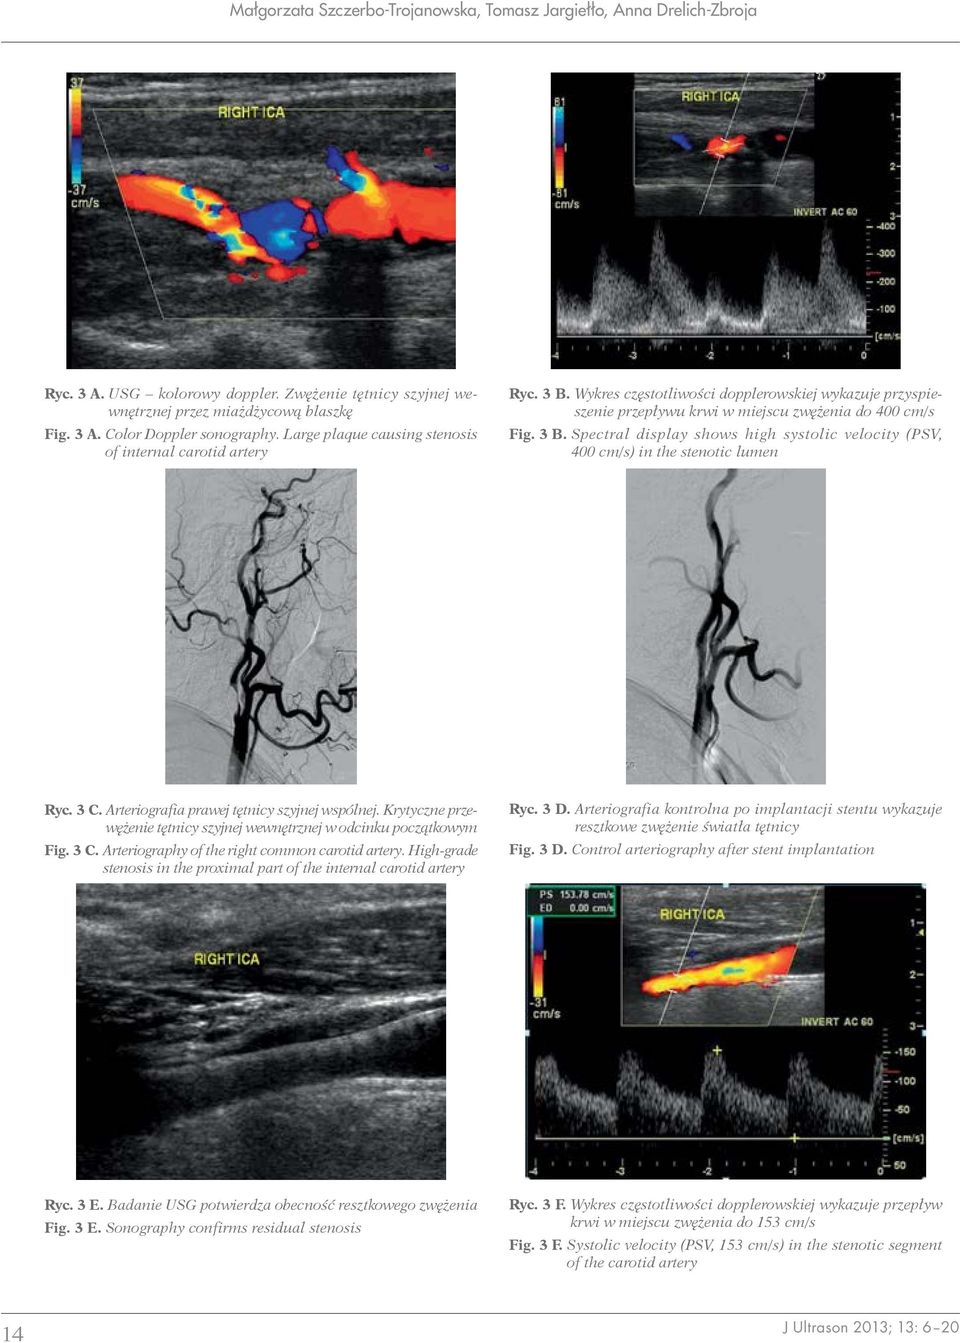 3 C. Arteriografia prawej tętnicy szyjnej wspólnej. Krytyczne przewężenie tętnicy szyjnej wewnętrznej w odcinku początkowym Fig. 3 C. Arteriography of the right common carotid artery.